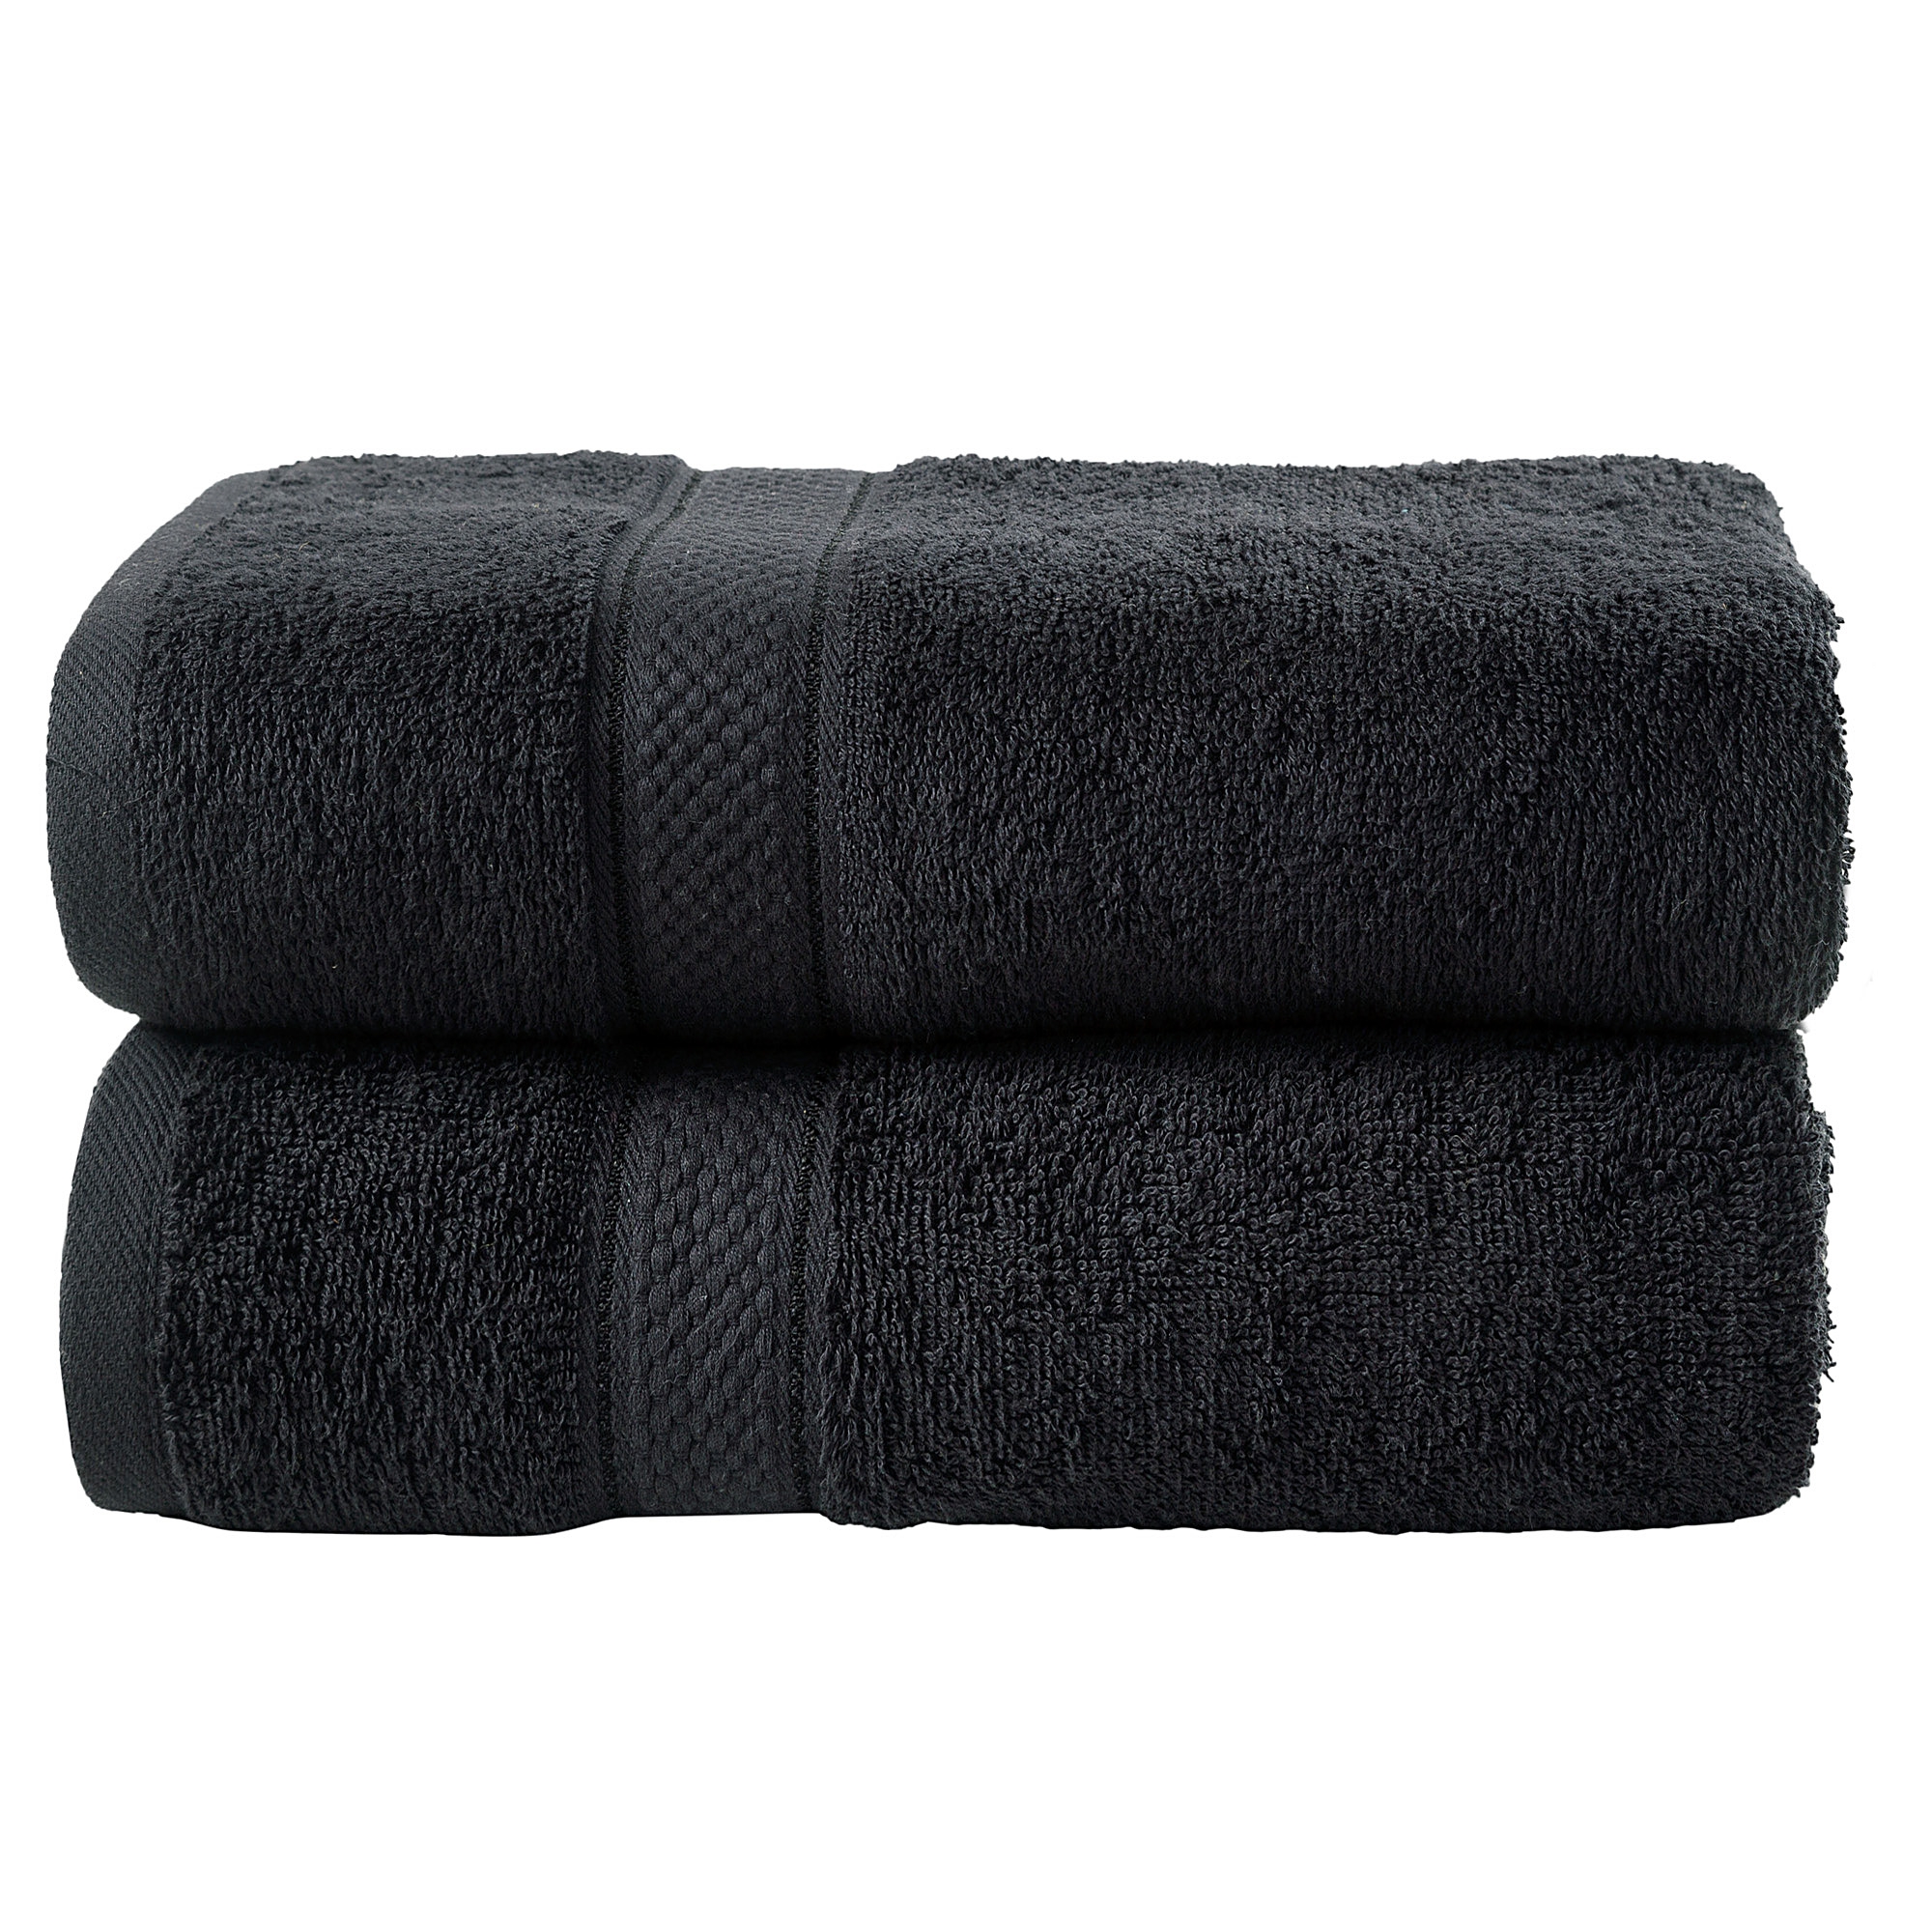 2 Pcs Bath Cotton Towel Bale Set Black Plain